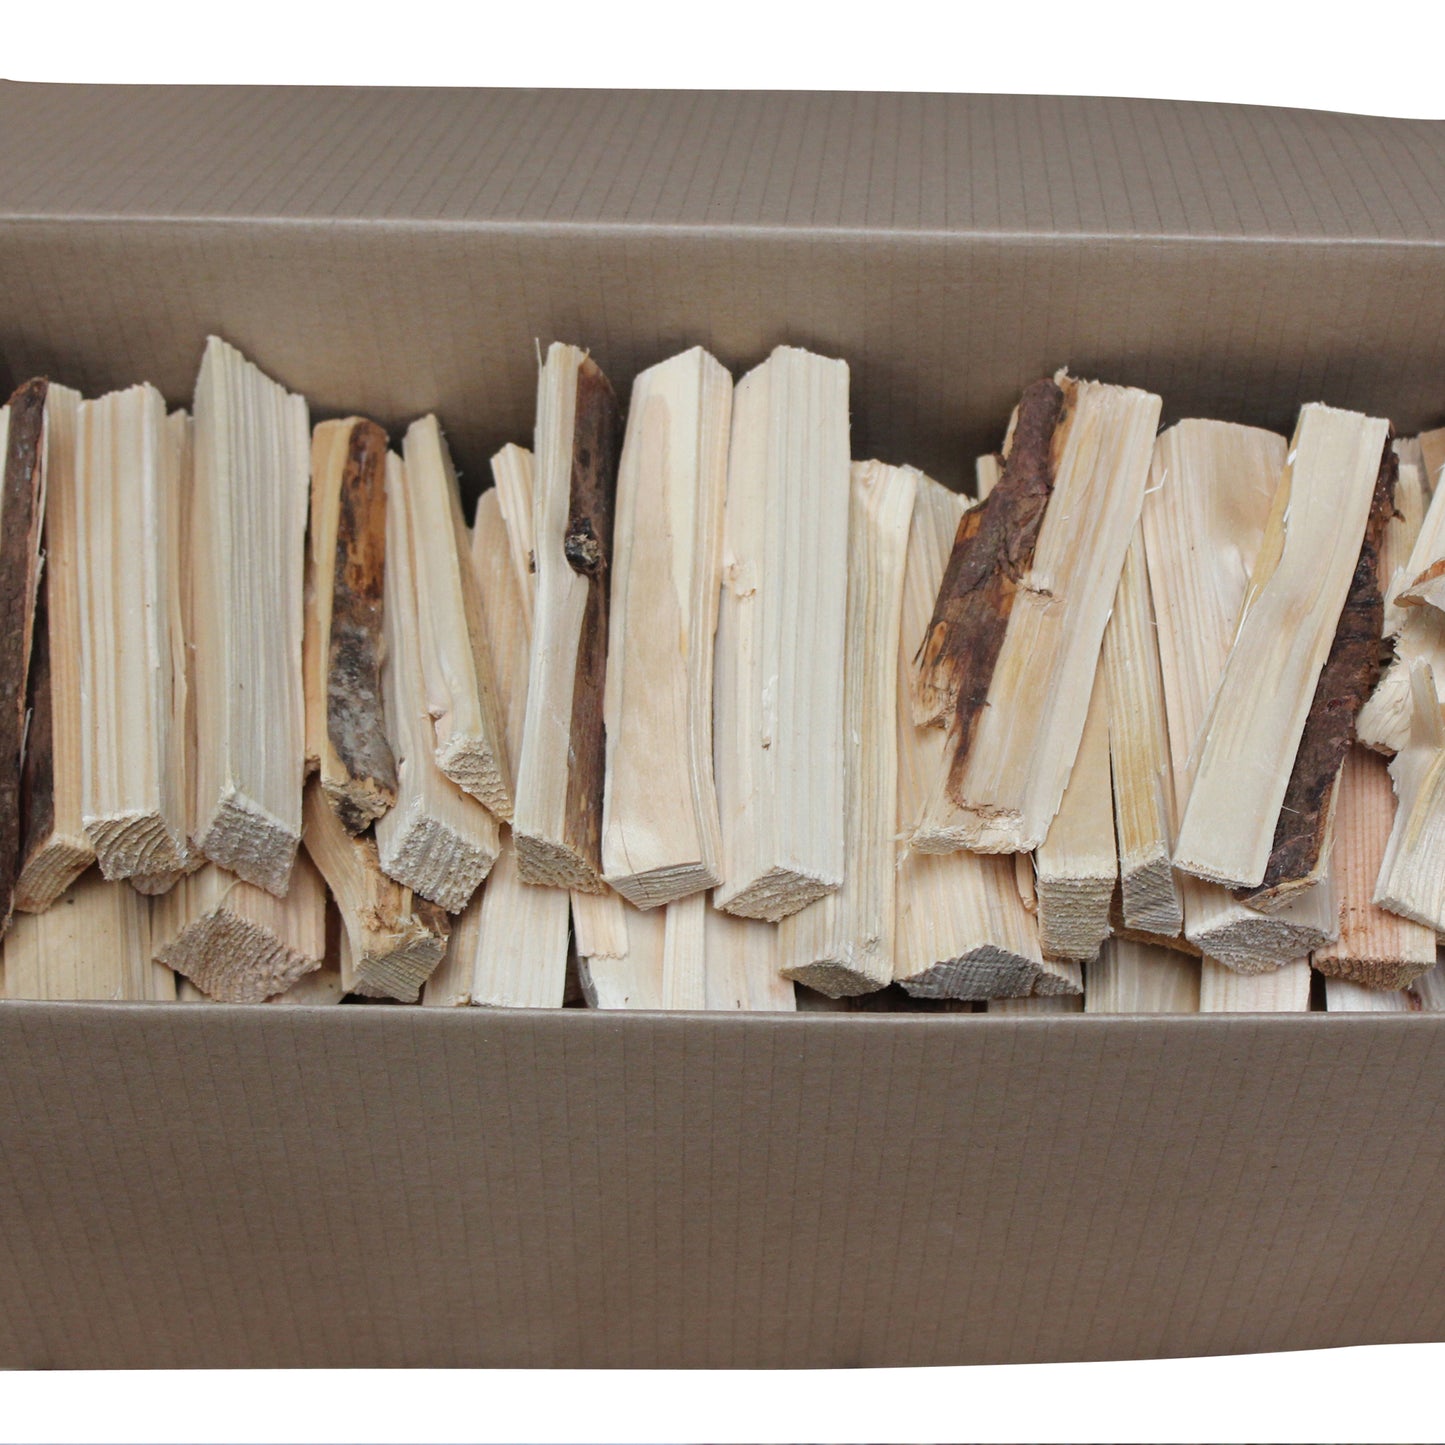 Kiln Dried Kindling Wood Sticks – Premium Natural Firewood – 2.75kg Box